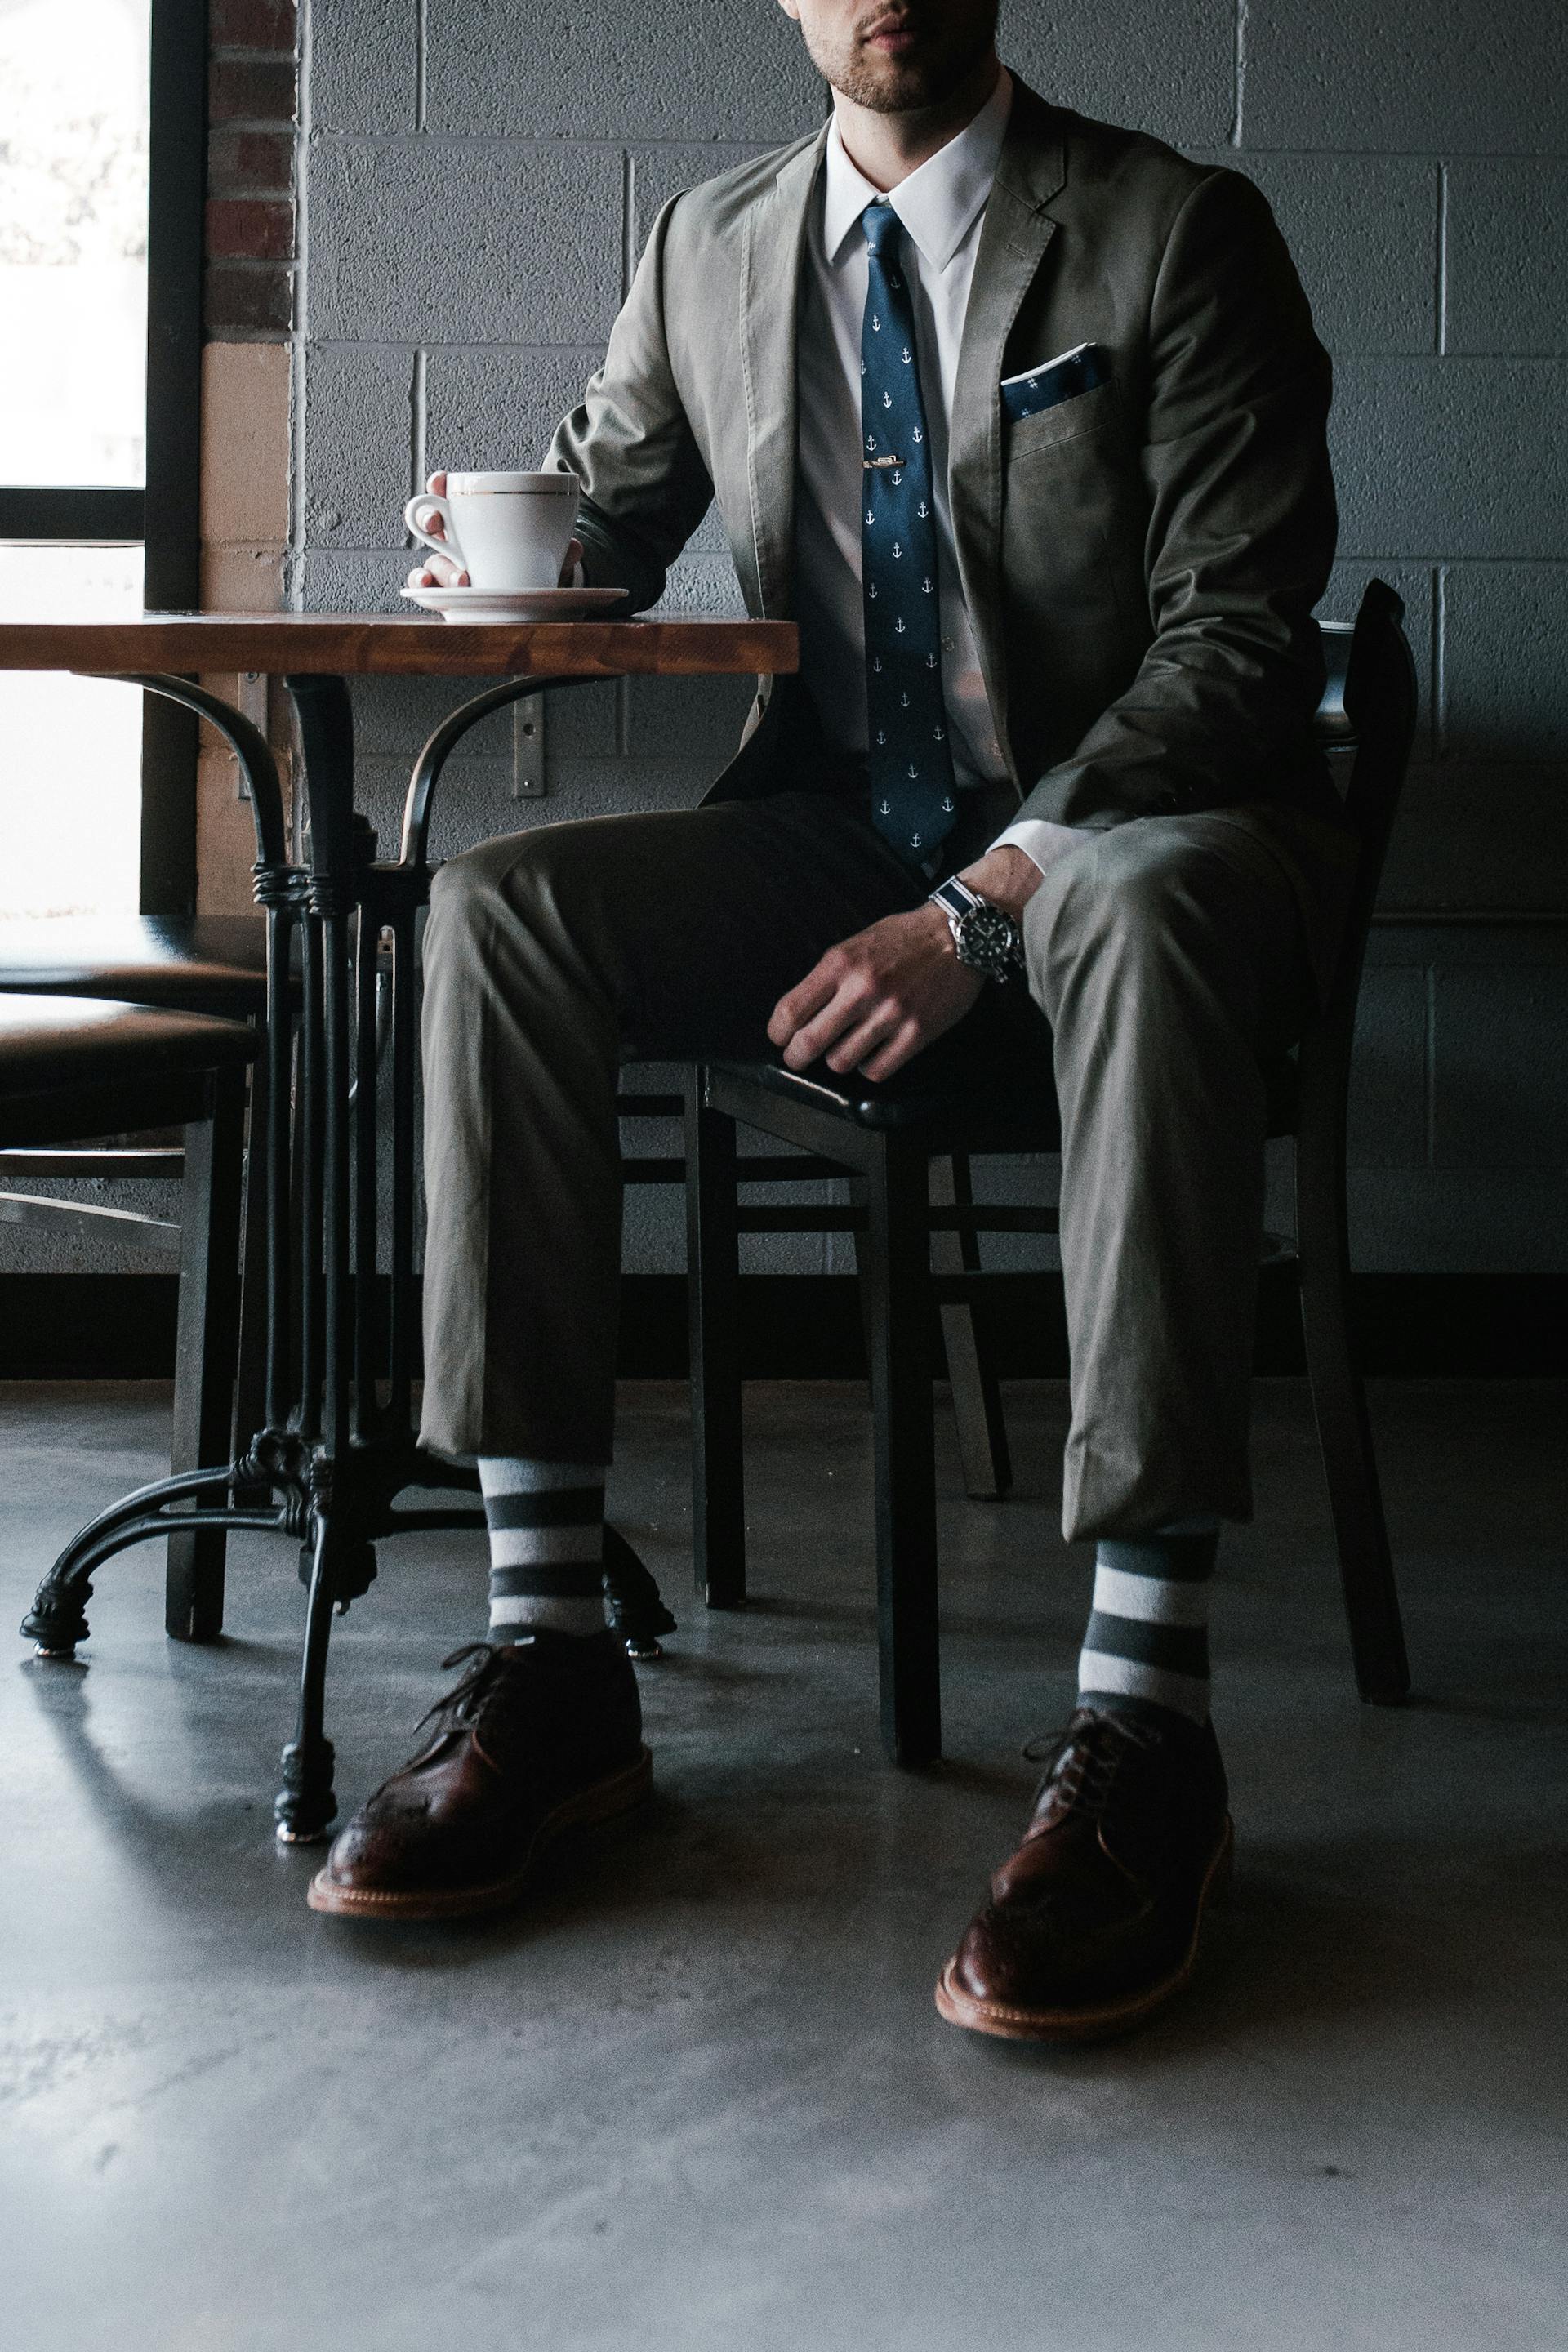 Un homme en costume assis à une table | Source : Pexels